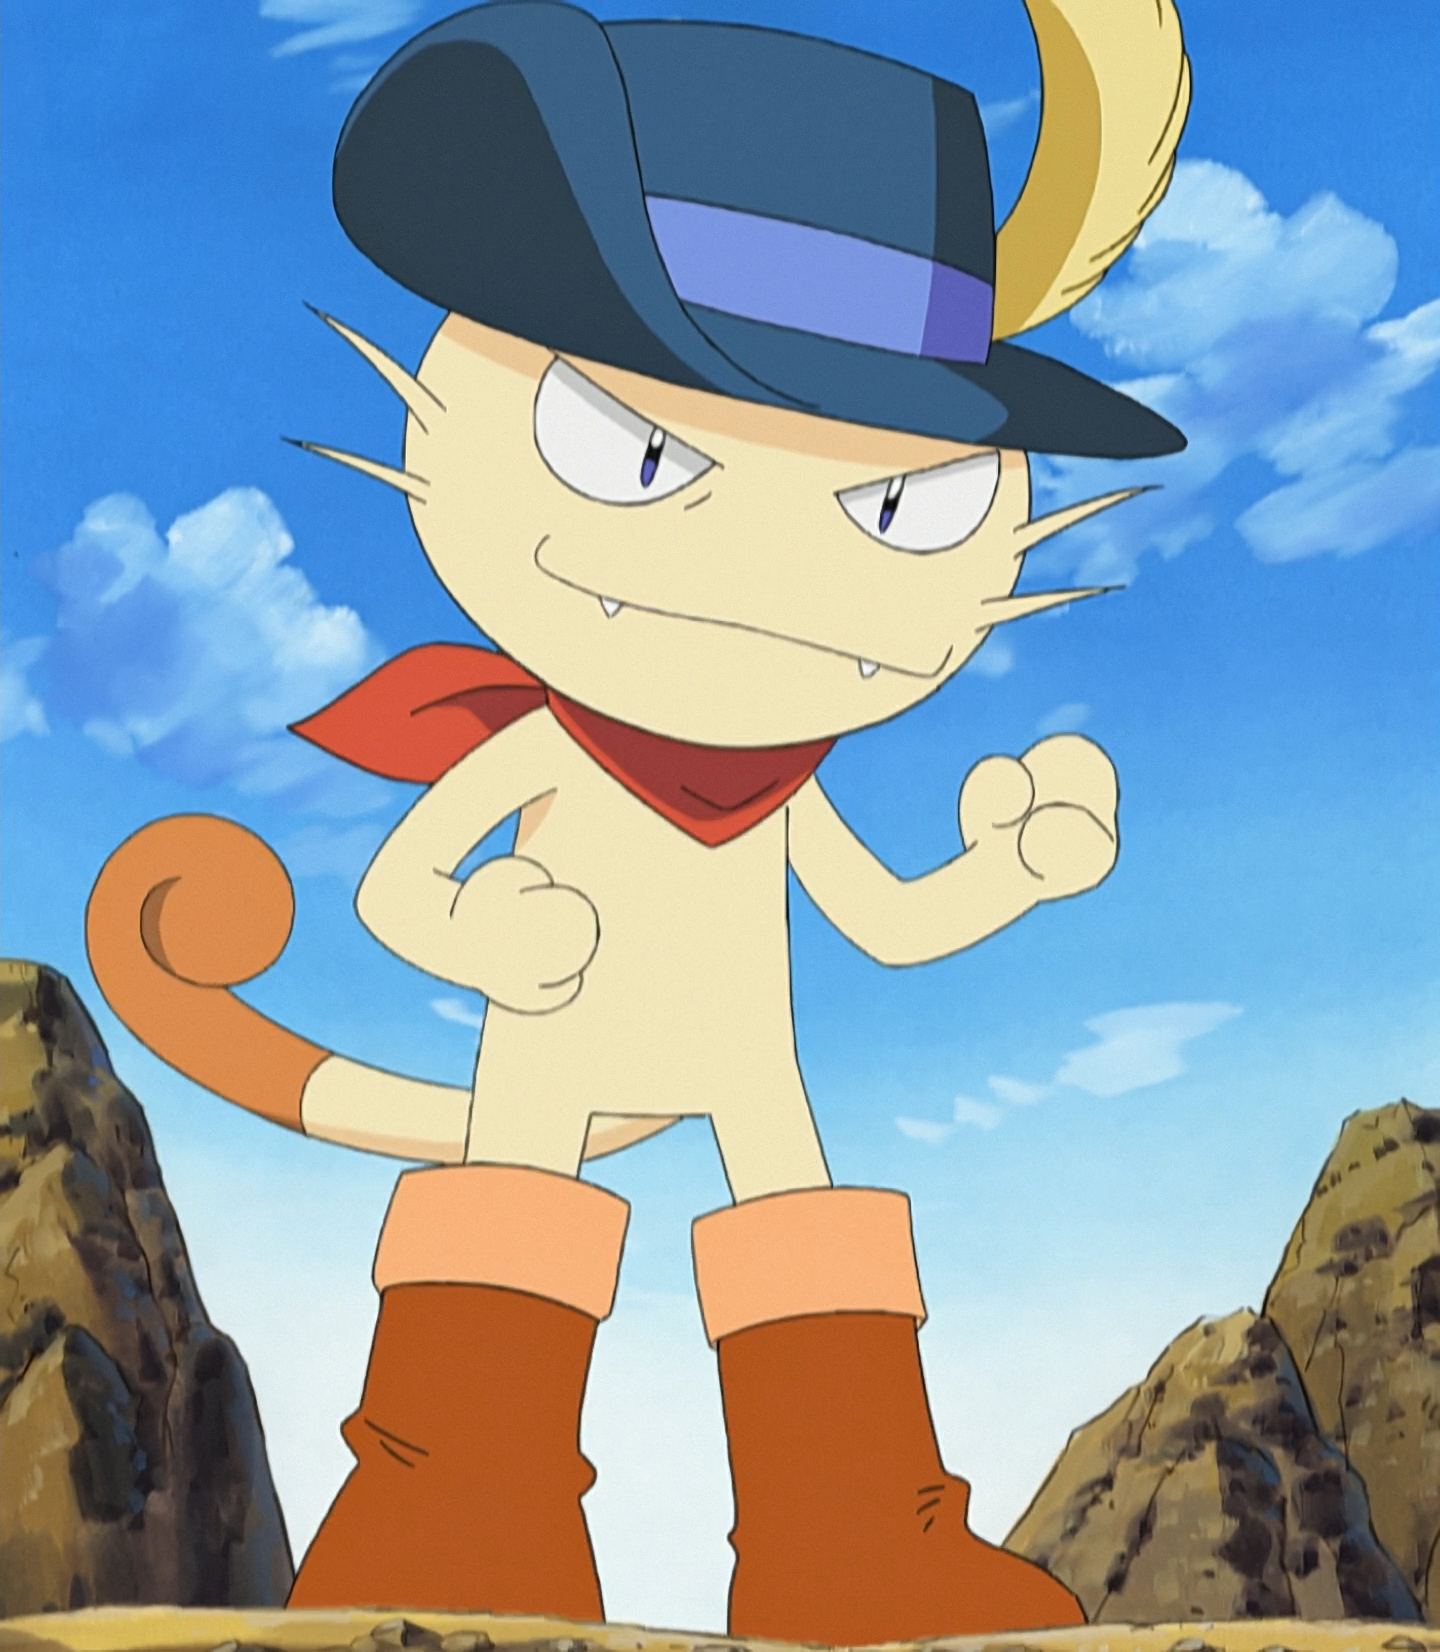 Tyson's Meowth | Pokémon Wiki | Fandom